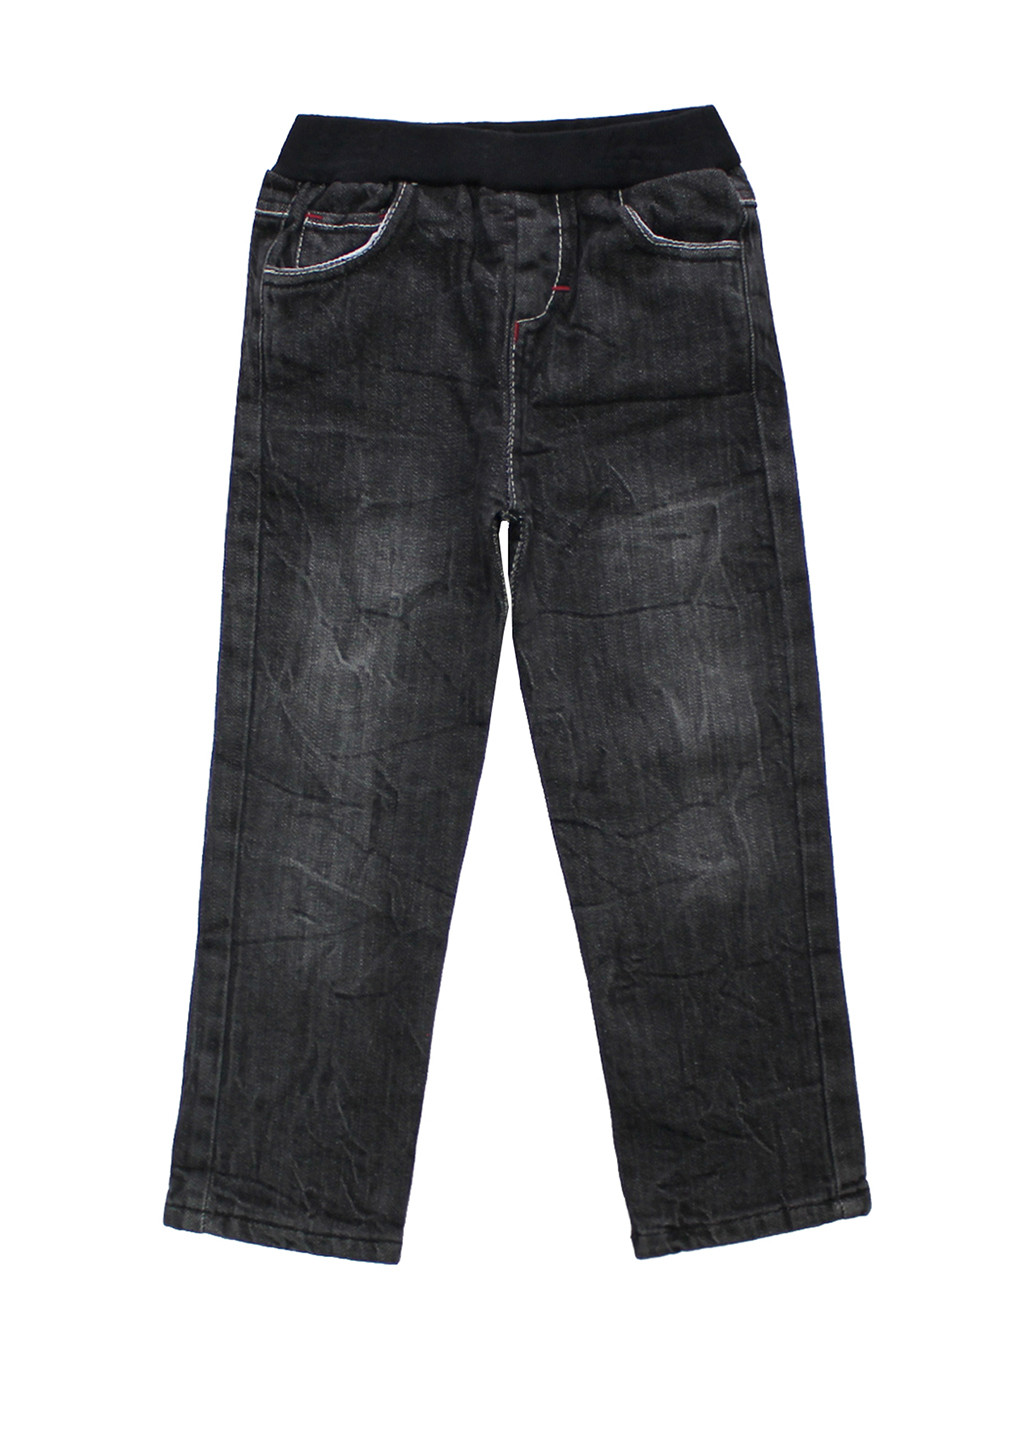 Черные джинсовые демисезонные брюки прямые CITCIT kids